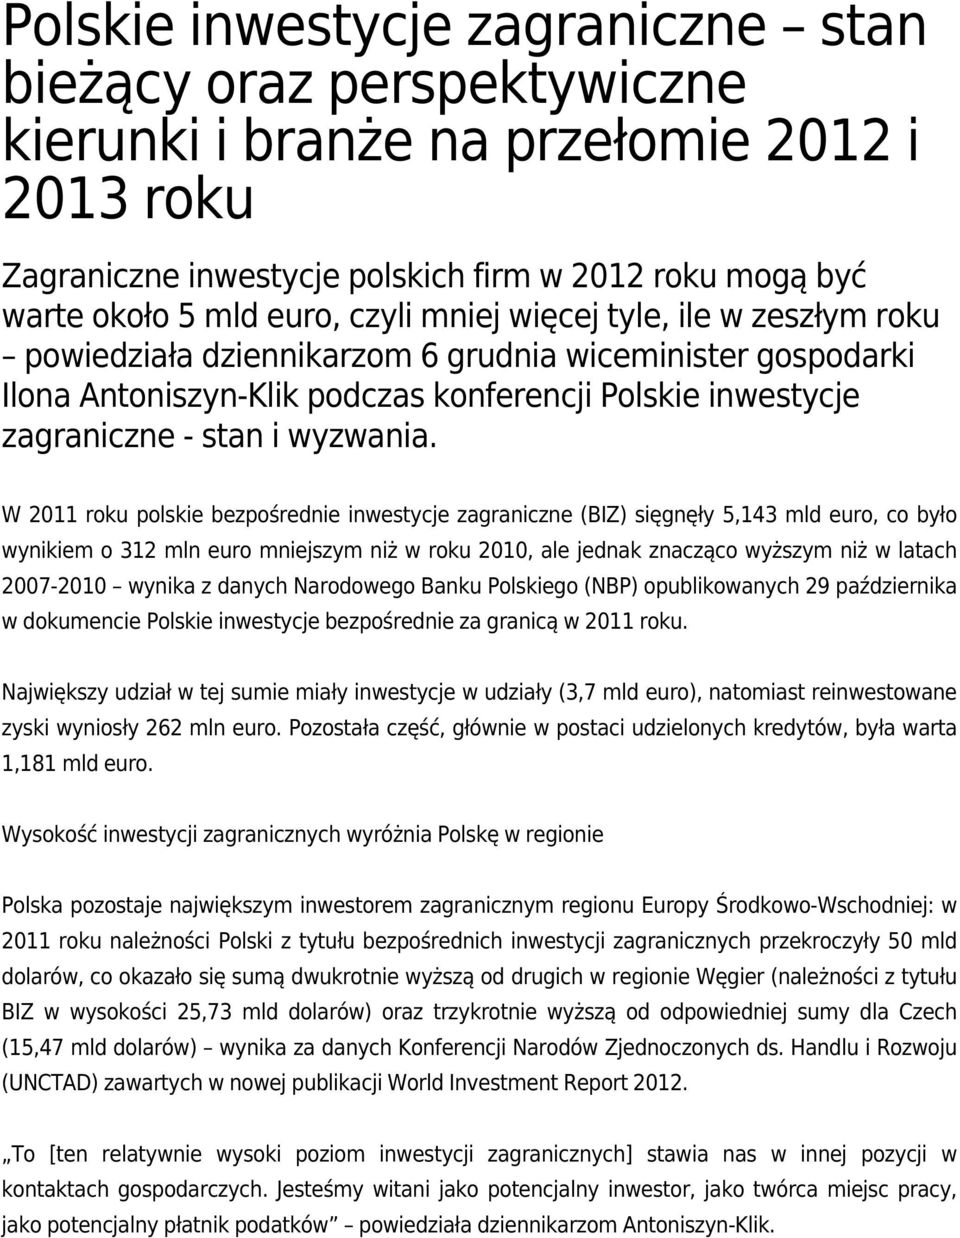 W 2011 roku polskie bezpośrednie inwestycje zagraniczne (BIZ) sięgnęły 5,143 mld euro, co było wynikiem o 312 mln euro mniejszym niż w roku 2010, ale jednak znacząco wyższym niż w latach 2007-2010